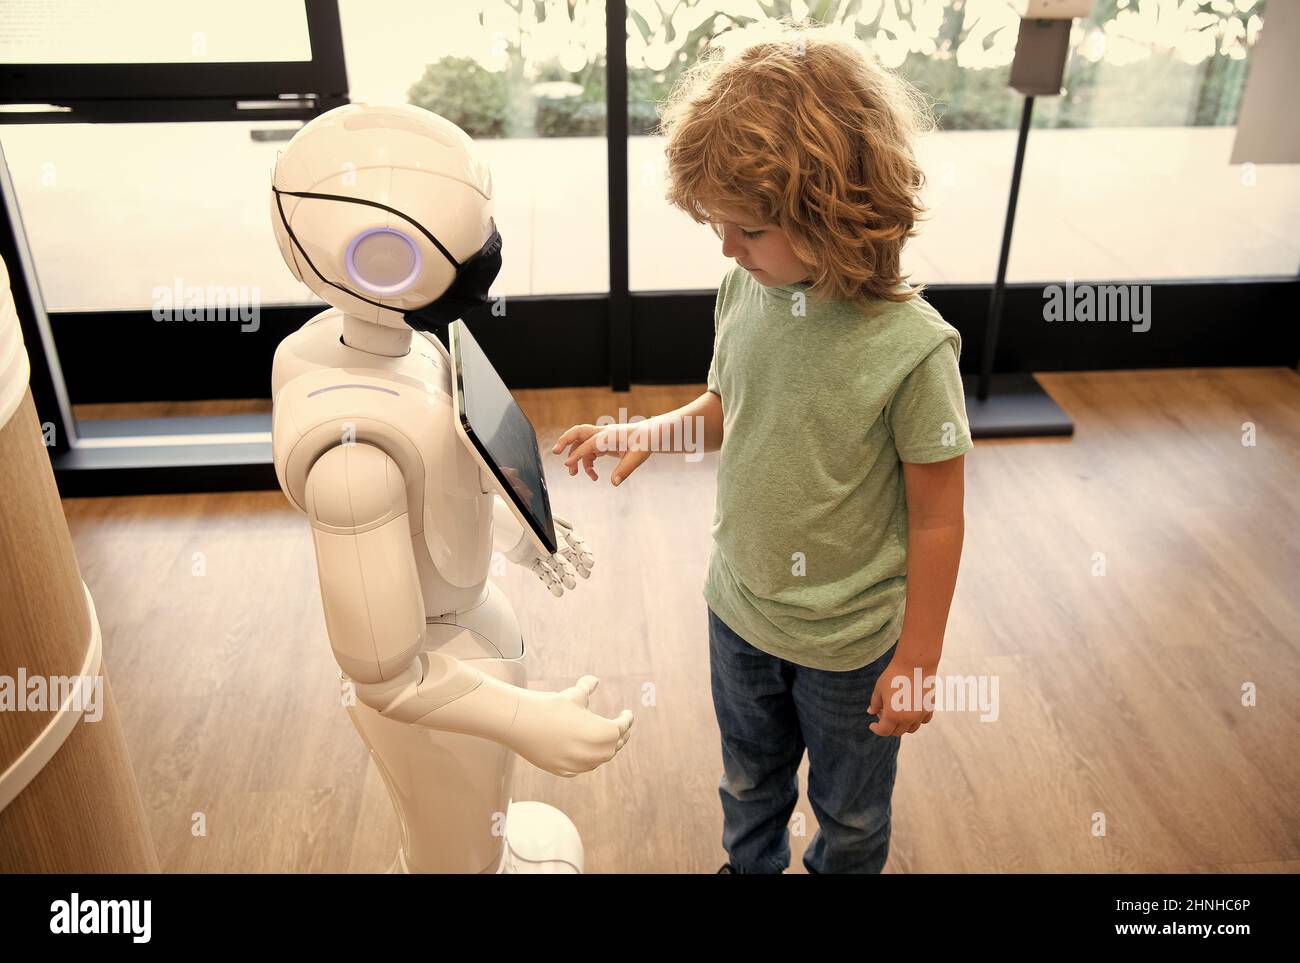 le robot fournit l'assistance à l'enfant. l'automatisation. l'intelligence artificielle interagir avec le garçon Banque D'Images